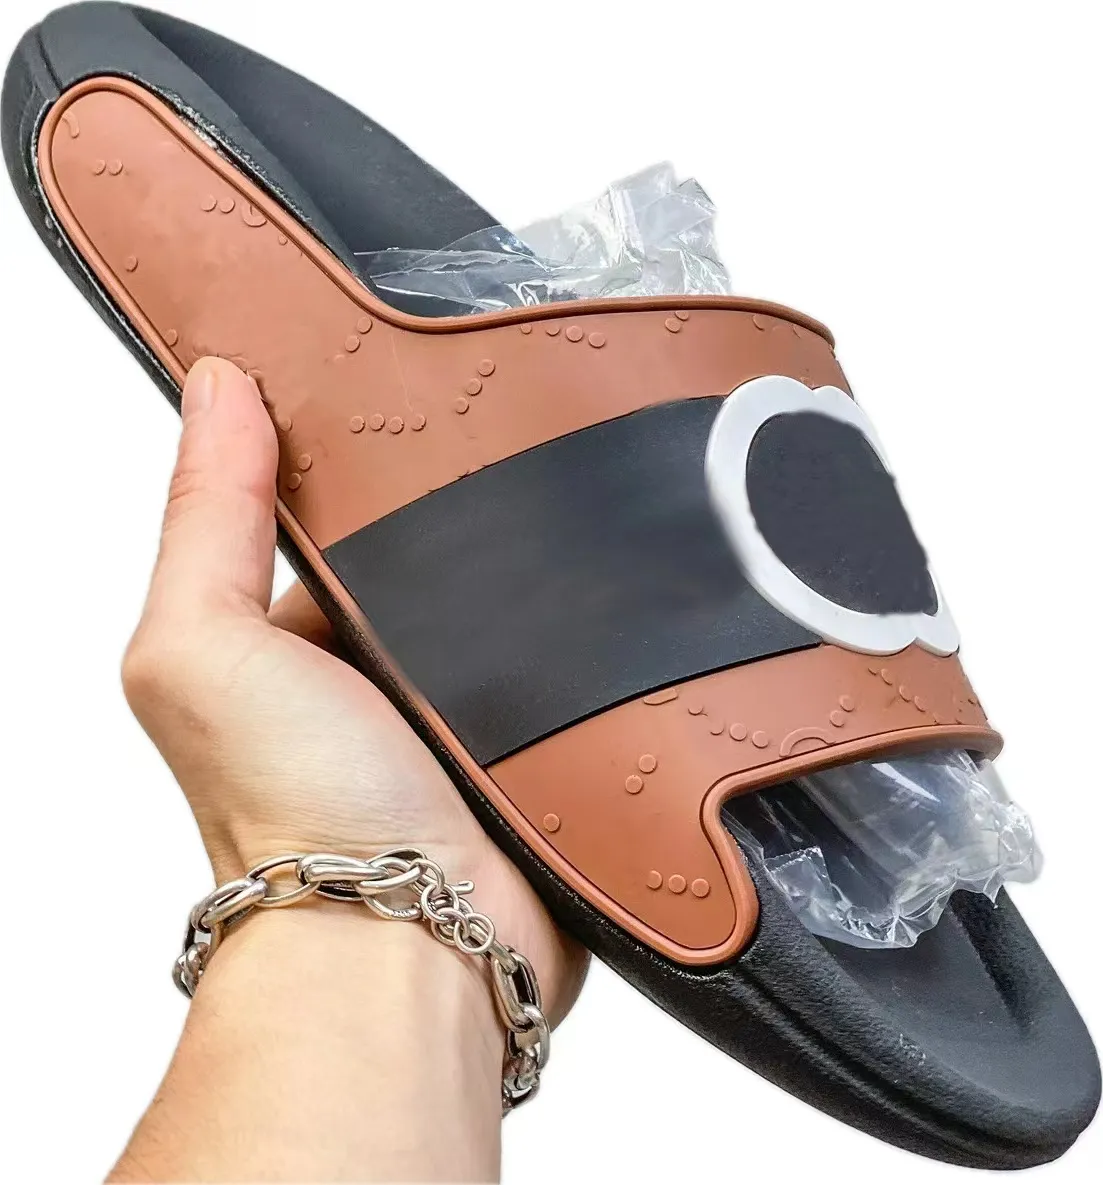 Pantofole piatte classiche da uomo DesignerLazy sandali con scivolo in gomma con fondo morbido sandali da spiaggia alla moda estiva